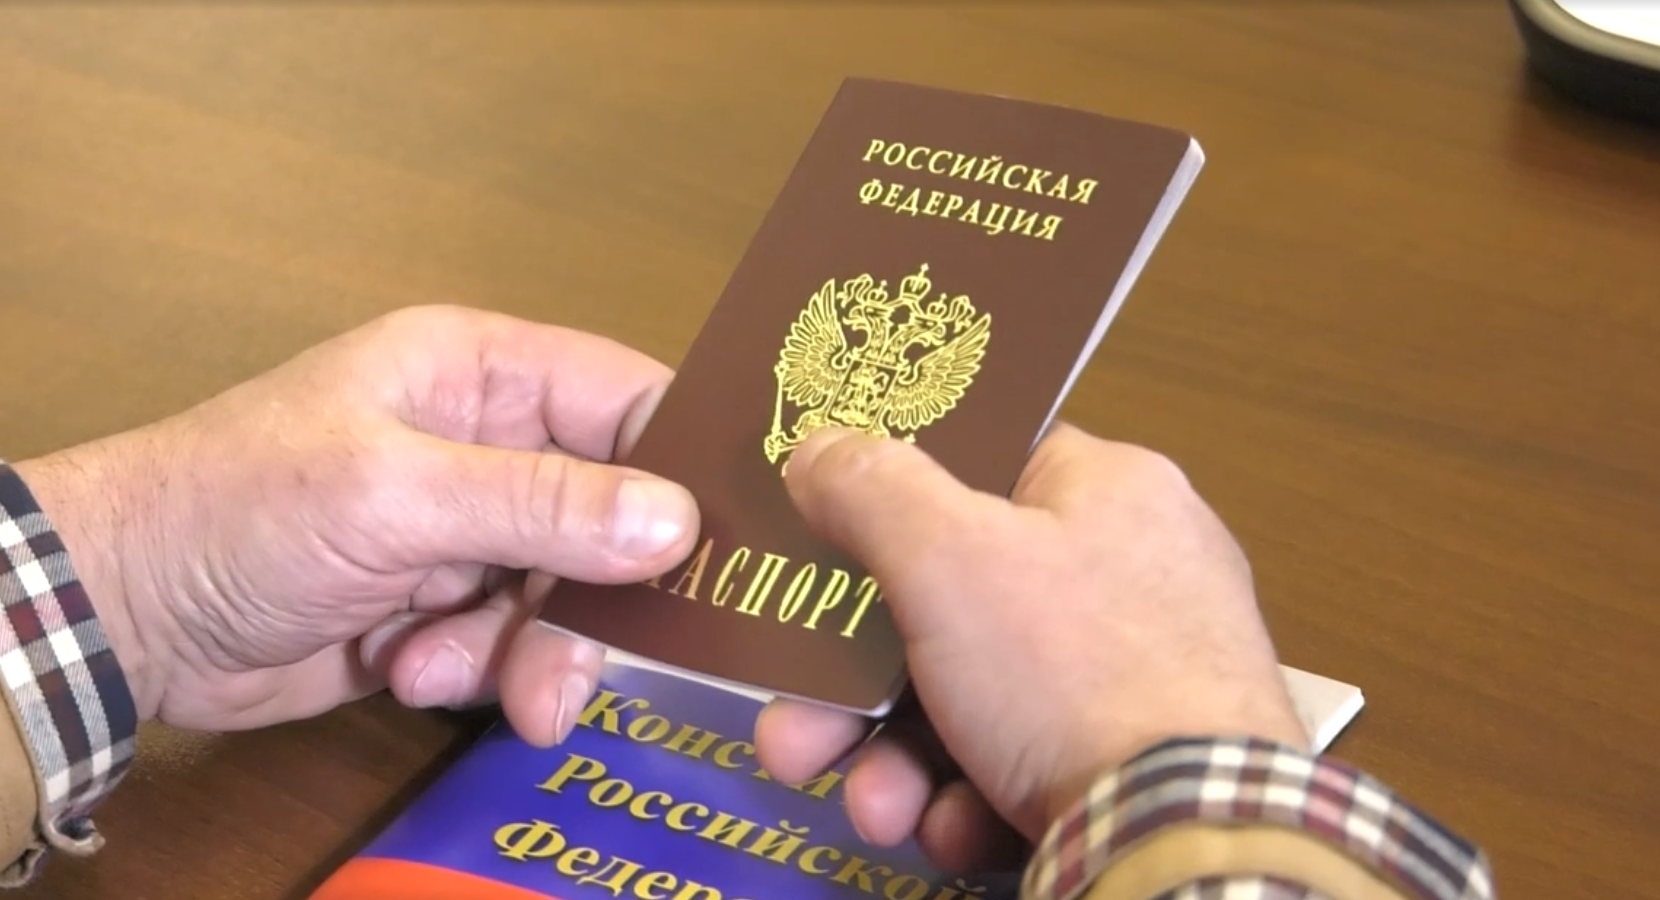 45 лет фото паспорт лнр